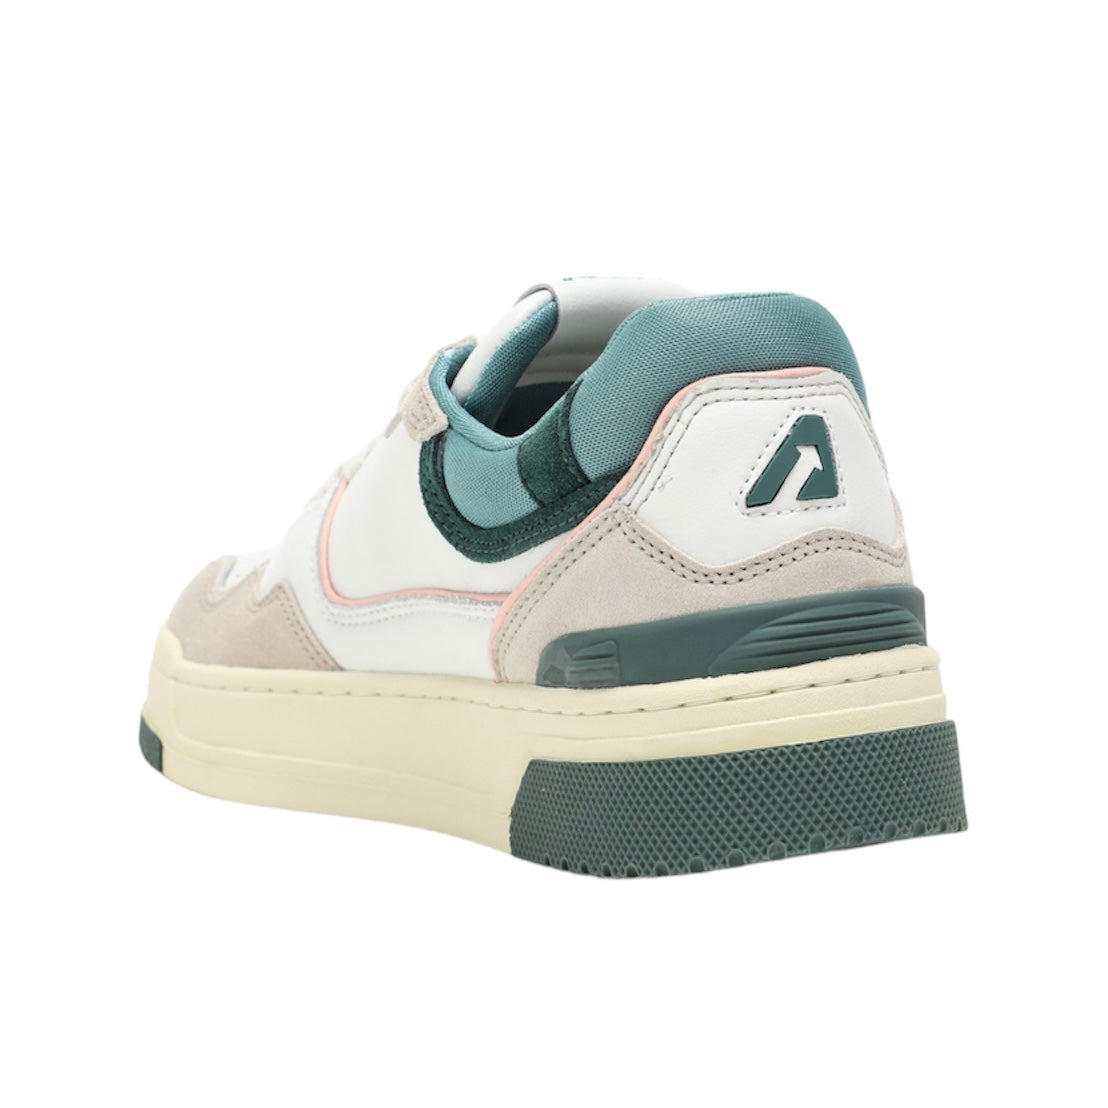  Autry Sneaker Clc Bianco Uomo - 2